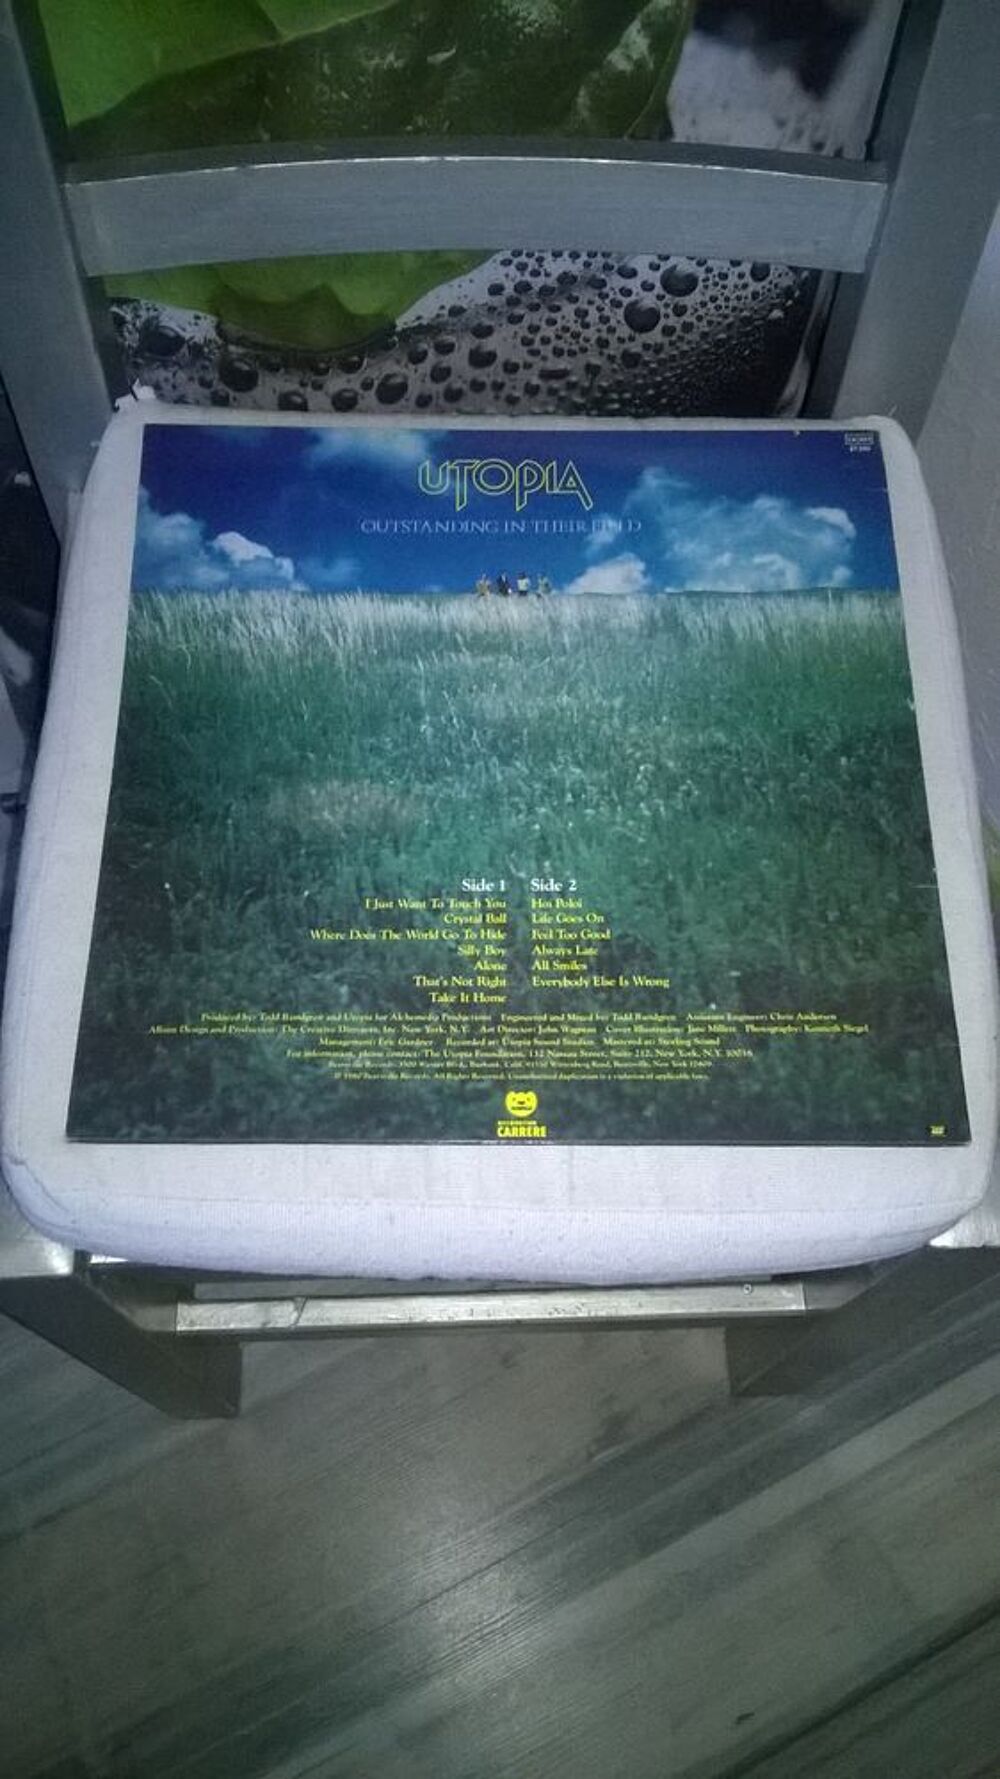 Vinyle Utopia
Deface The Music
1980
Excellent etat
I Jus CD et vinyles